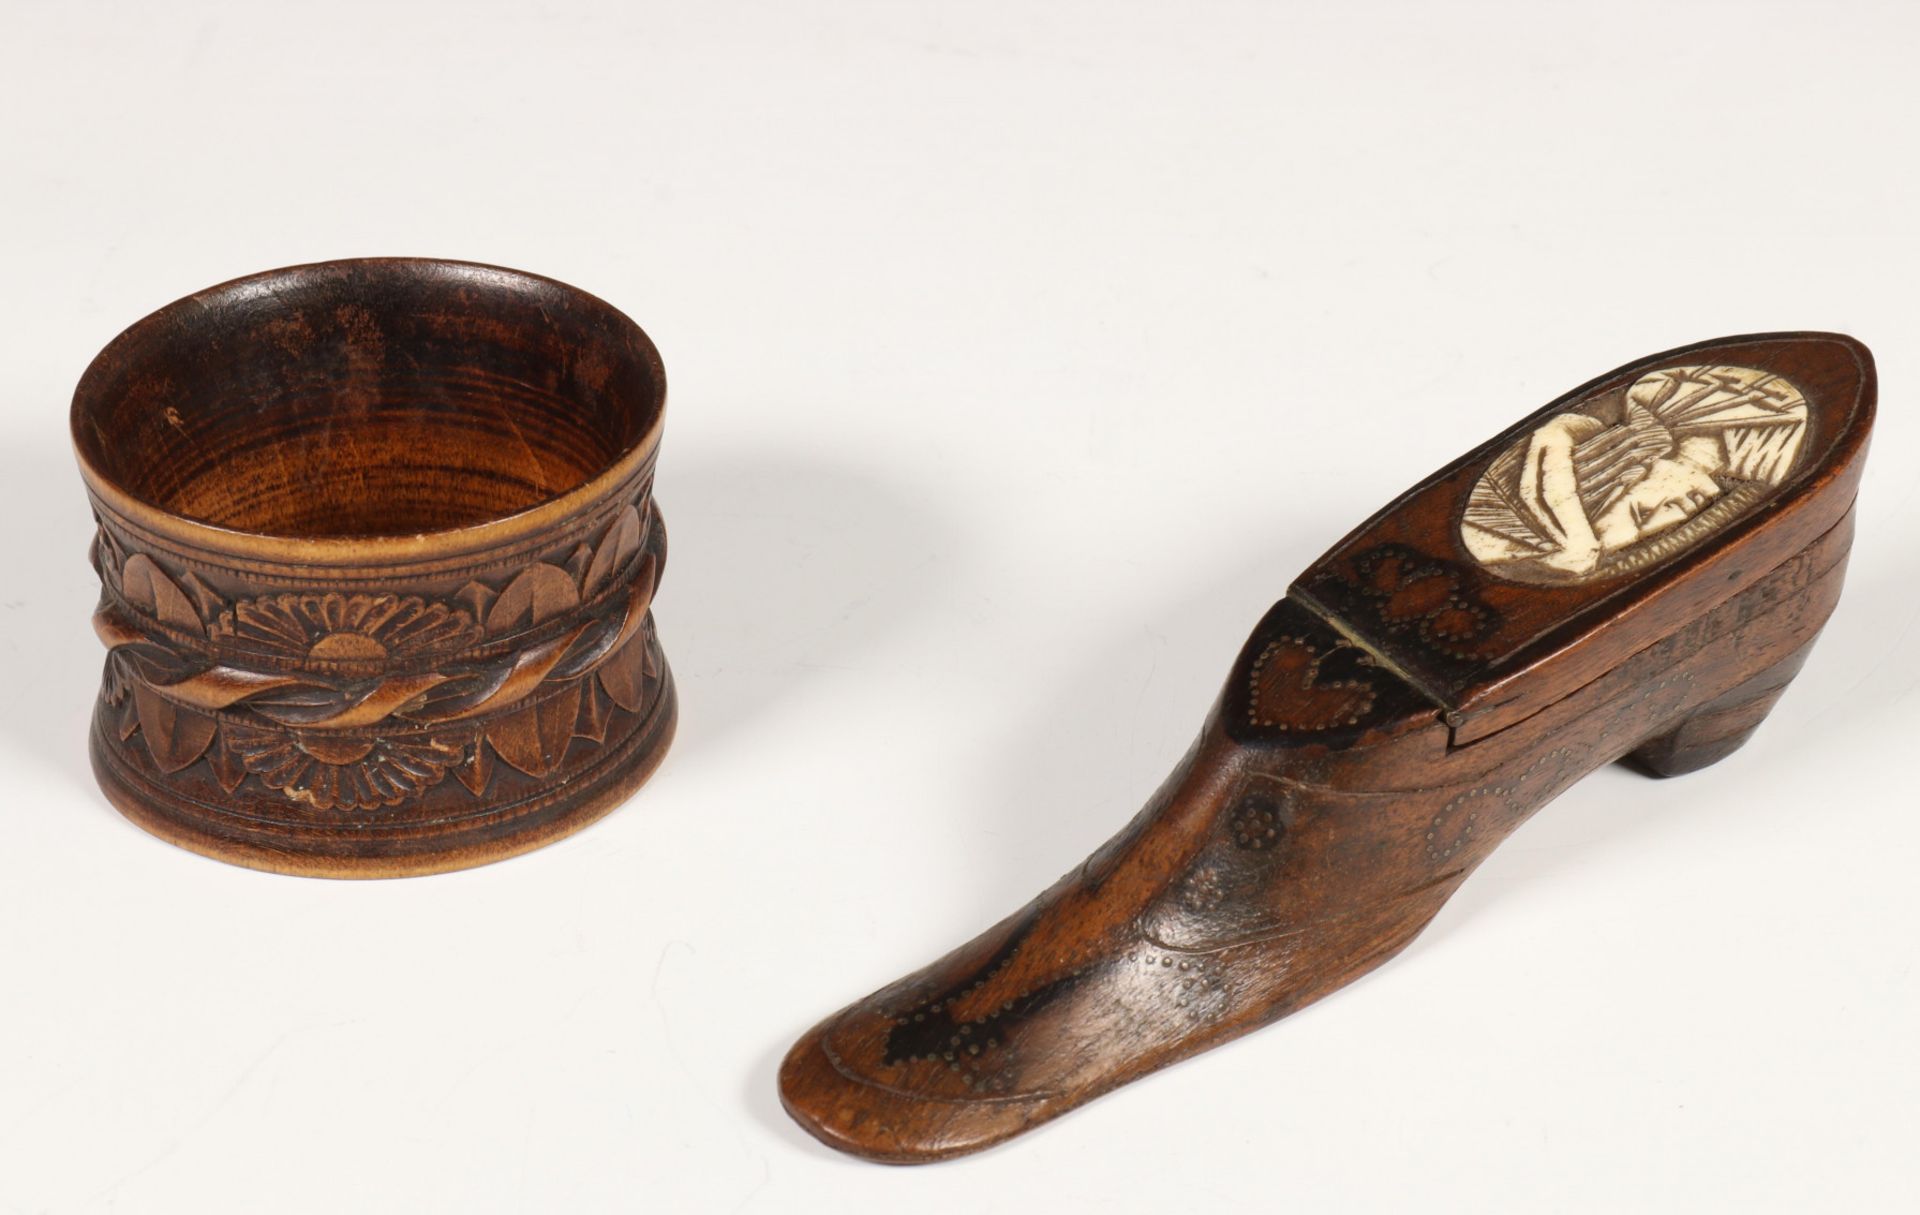 Houten schoenvormig snuifdoosje en houten servetring, ca. 1900. - Image 2 of 2